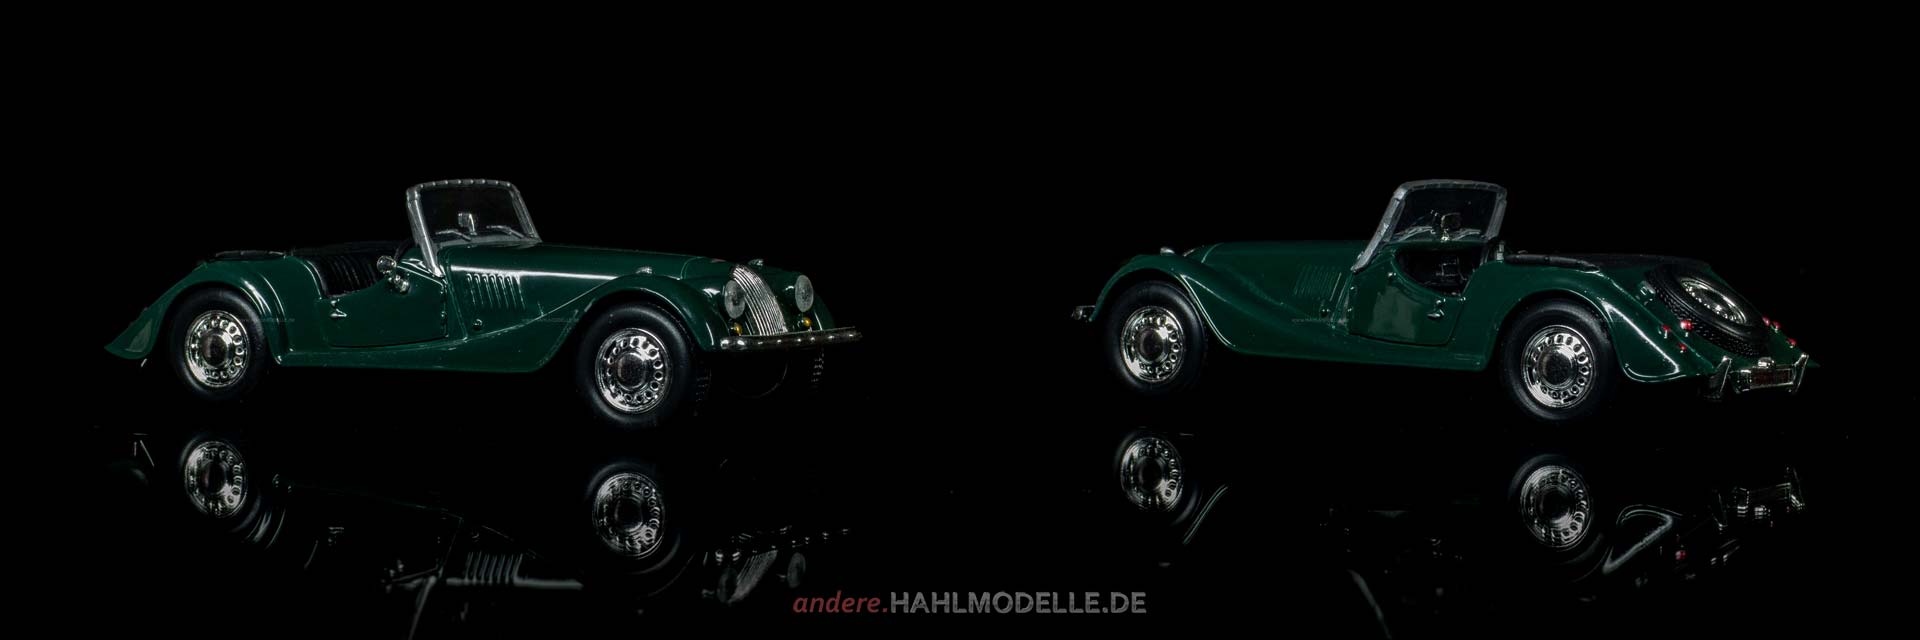 Morgan Plus Four | Roadster | Ixo (Del Prado Car Collection) | 1:43 | www.andere.hahlmodelle.de